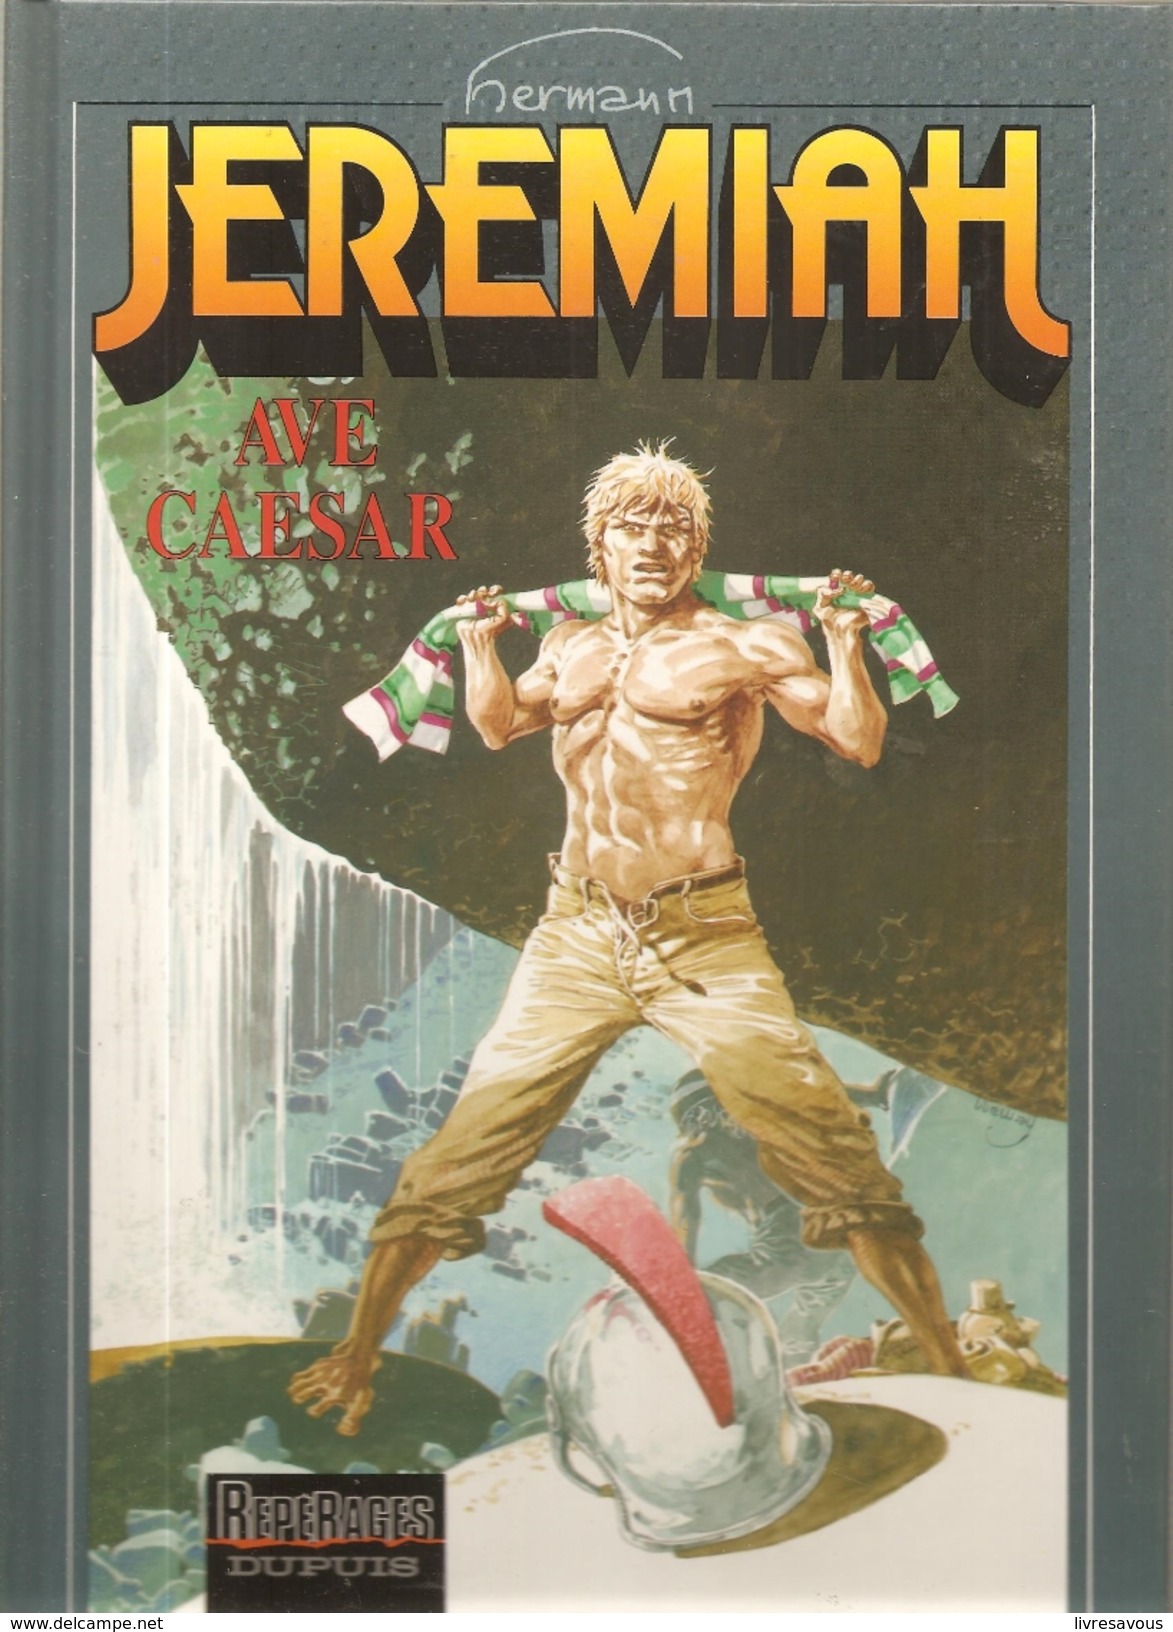 JEREMIAH Tome 18 AVE CESAR Par Hermann Editions REPERAGES DUPUIS De 1995 - Jeremiah